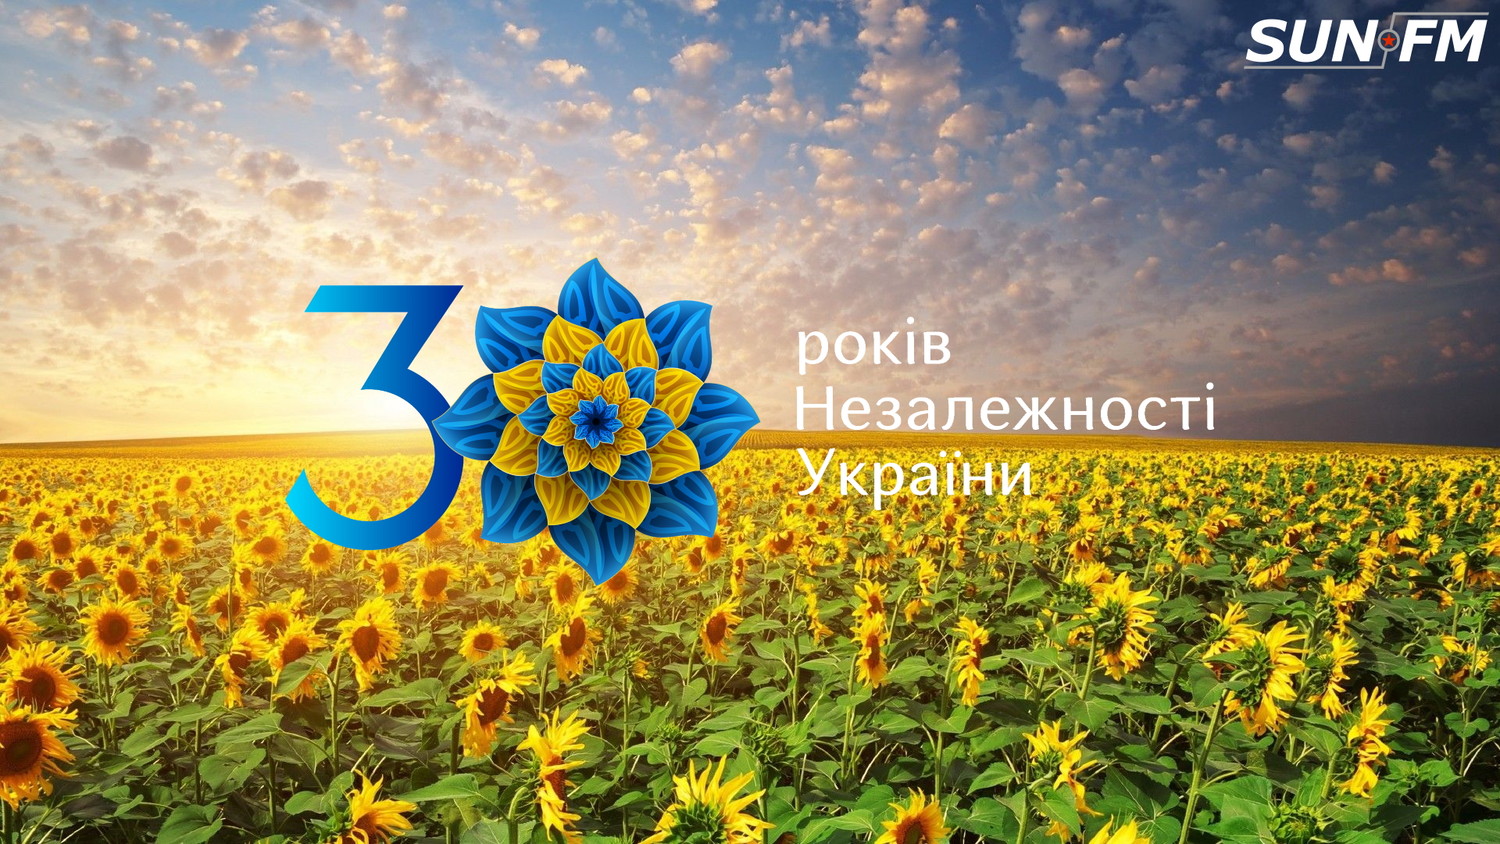 Изображение Команда Радіо SunFM вітає з 30 річницею Незалежності України - 2022